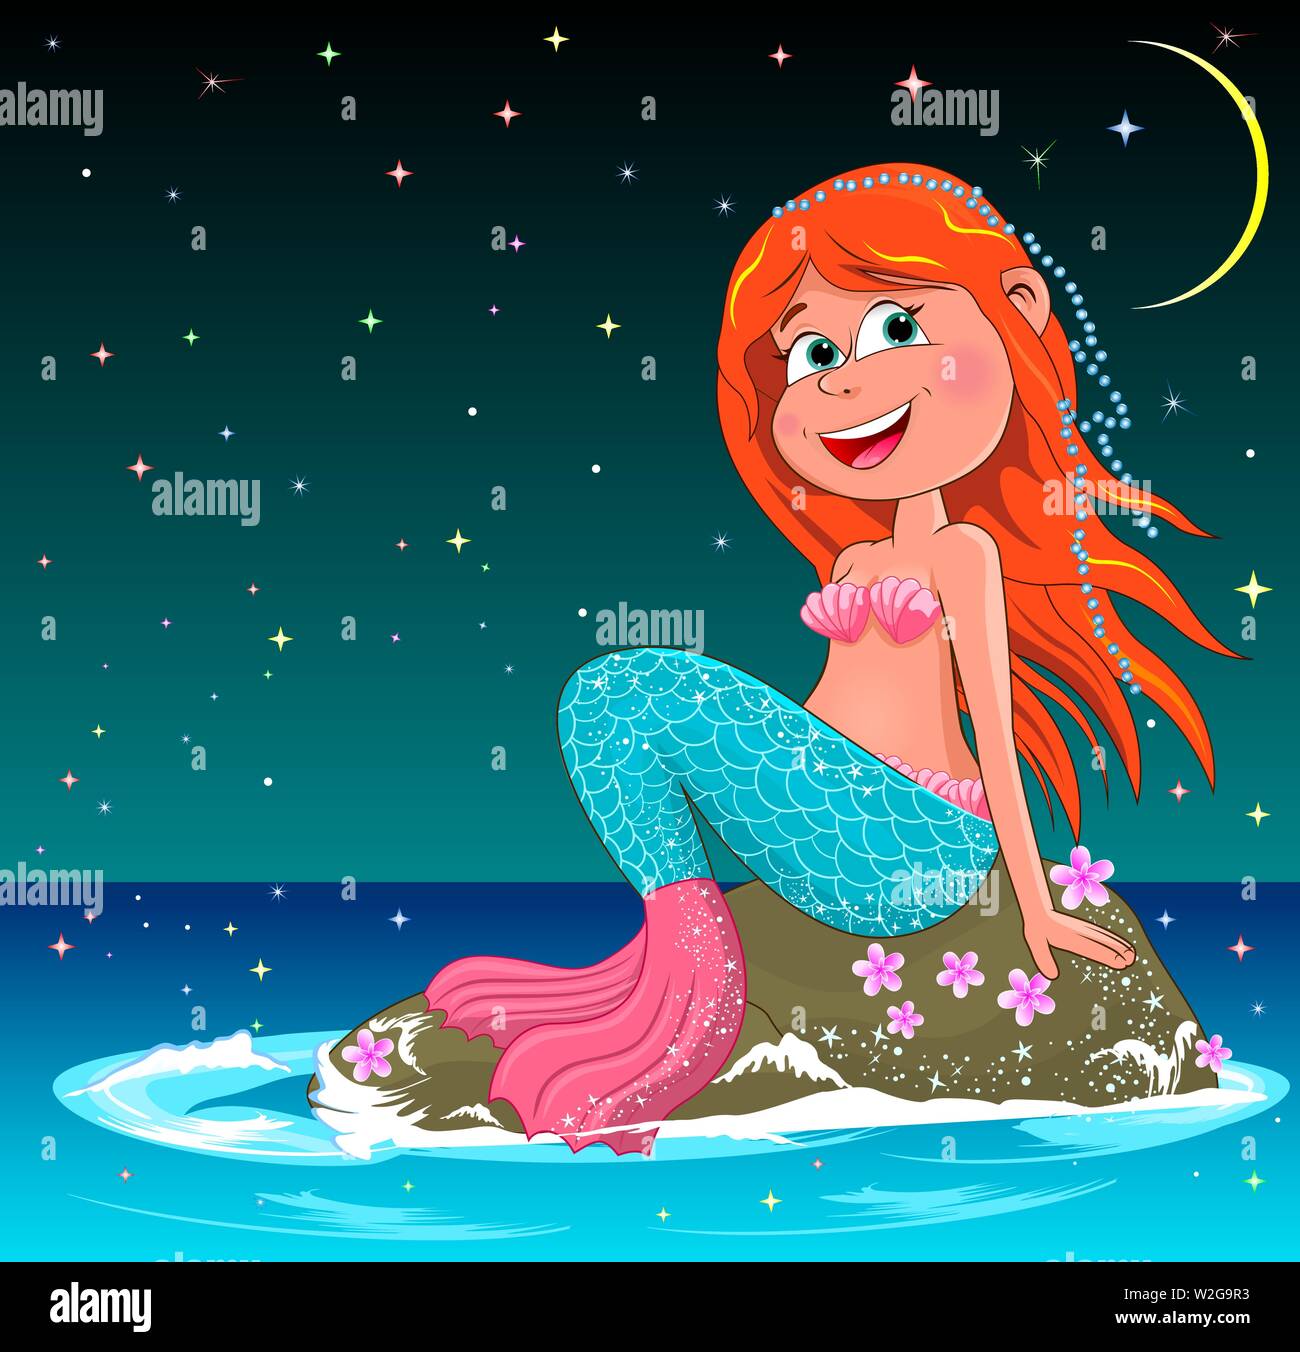 Belle sirène assise sur une pierre de la mer. Sirène aux cheveux rouges sur le fond de la nuit ciel étoilé. Illustration de Vecteur